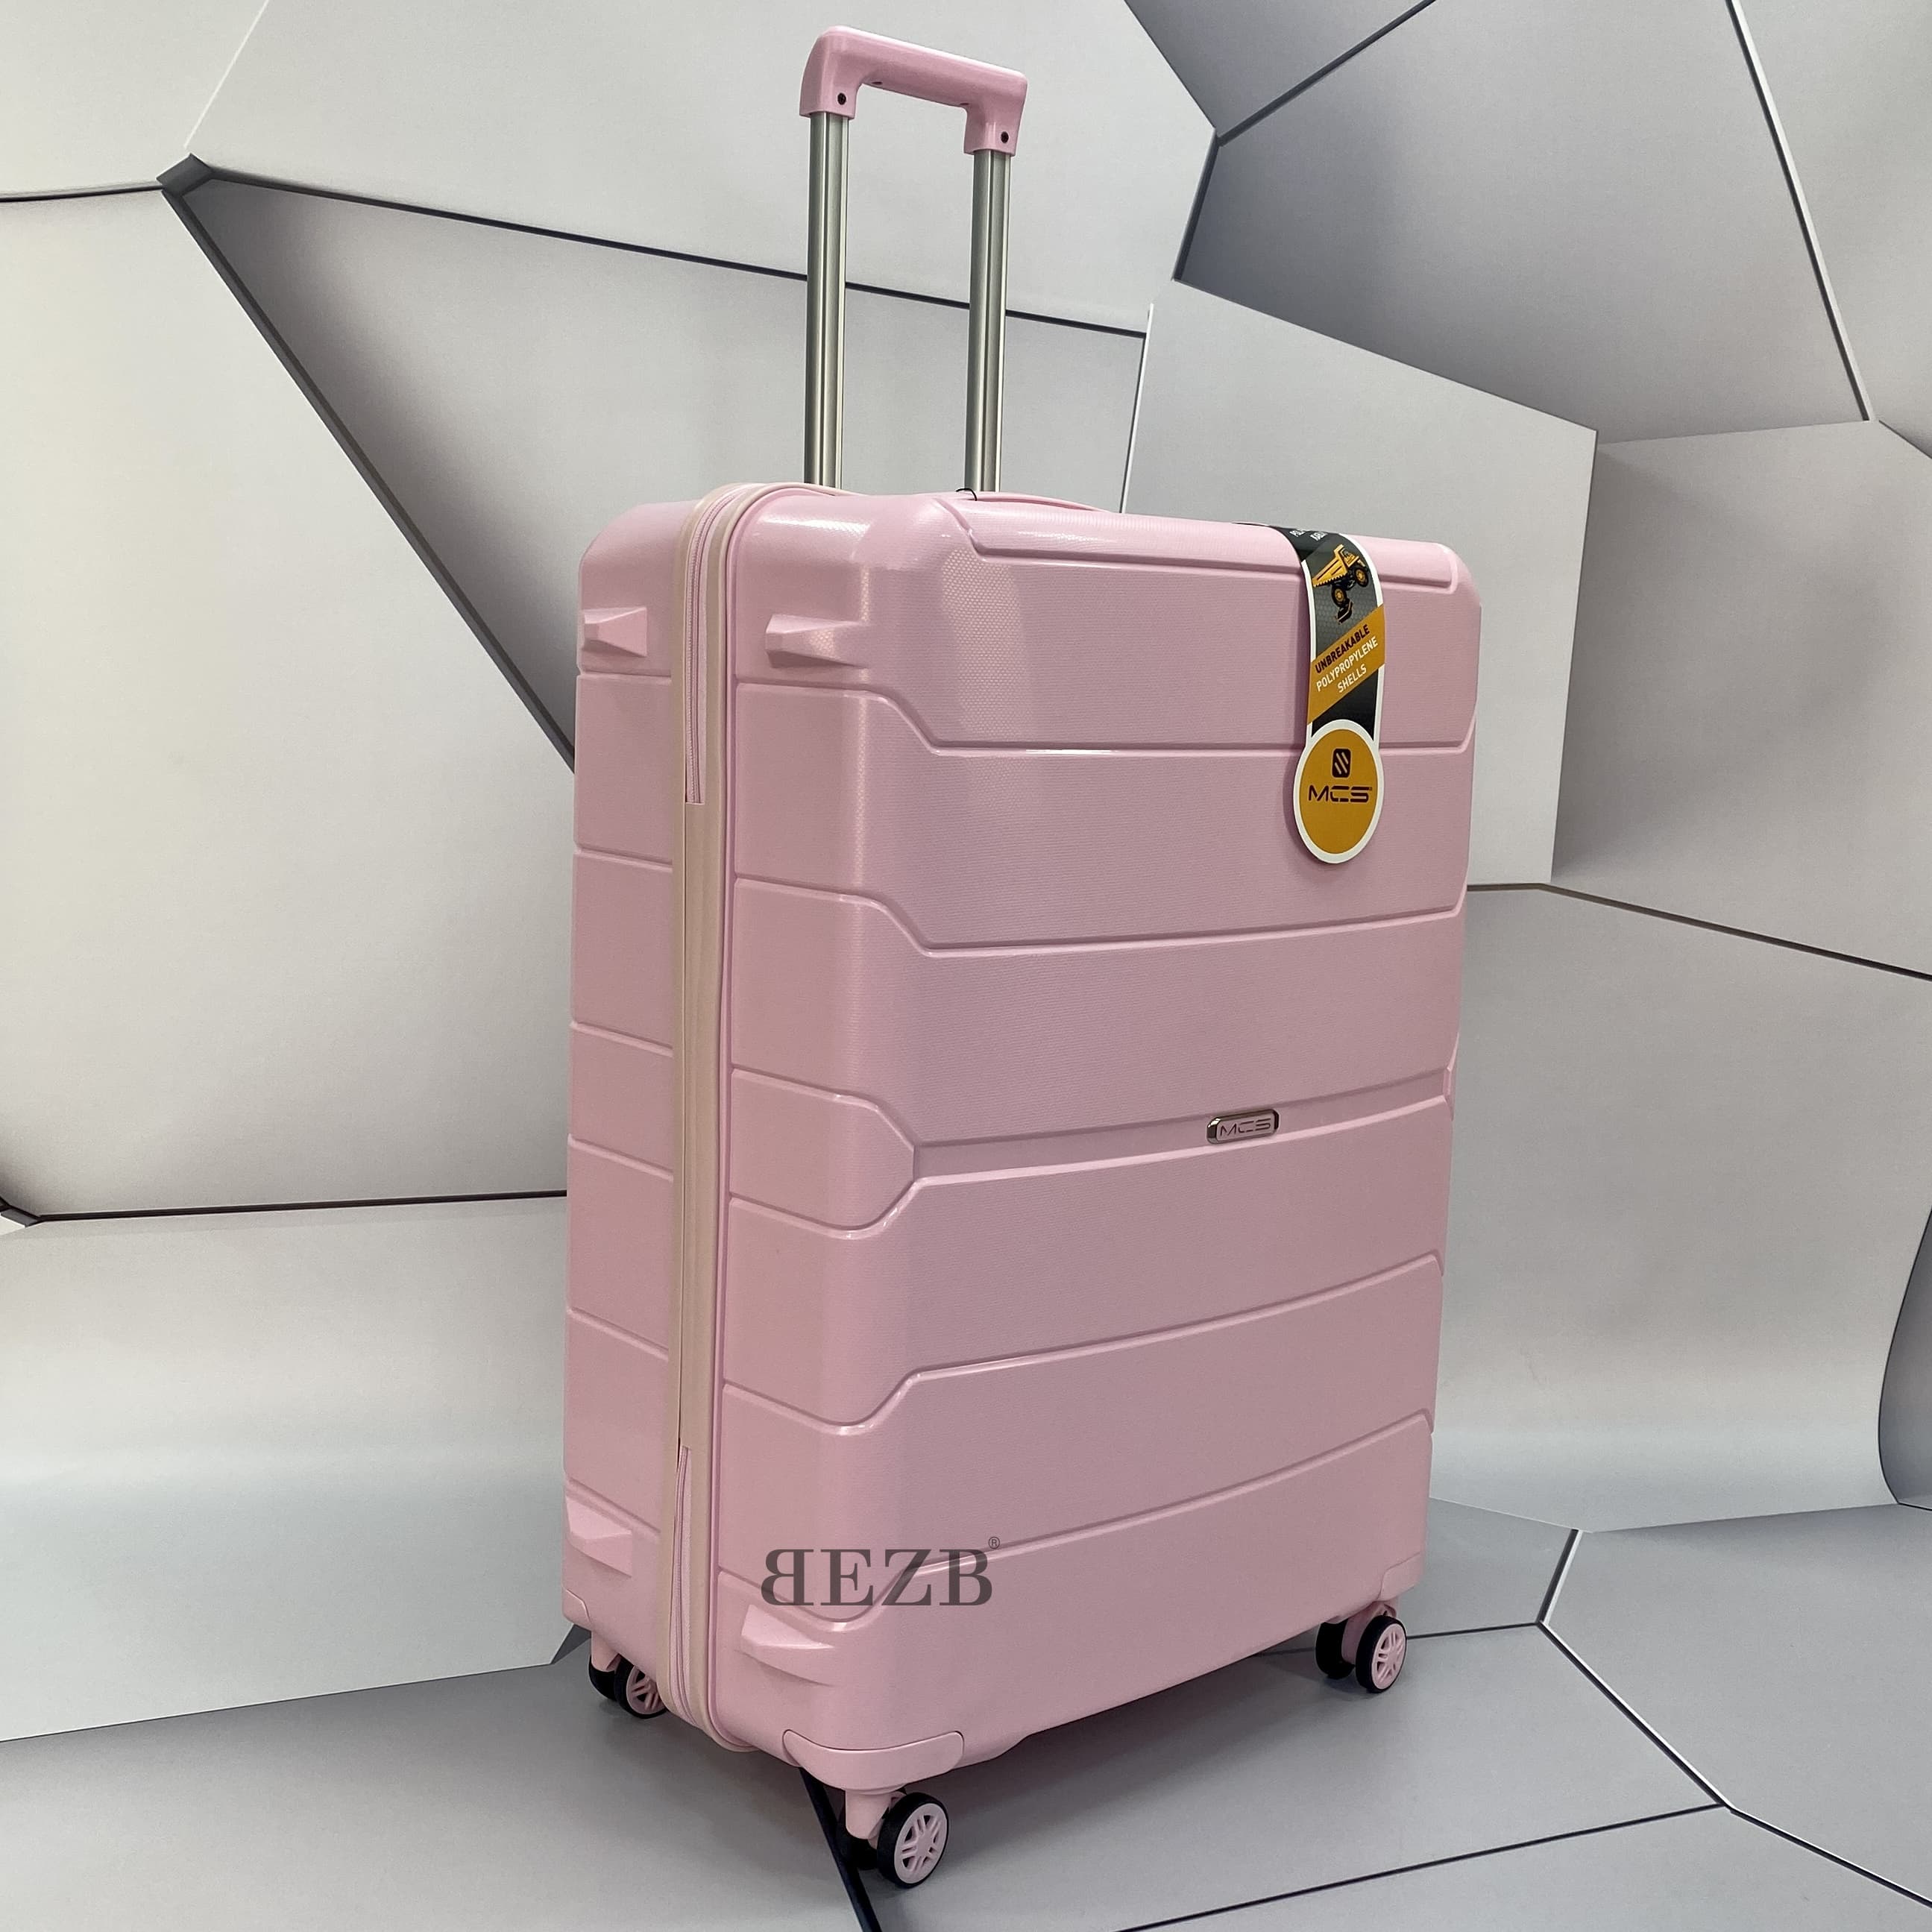 Большой чемодан из полипропилена MCS V366 L POWDER! Для 23 кг! - 6